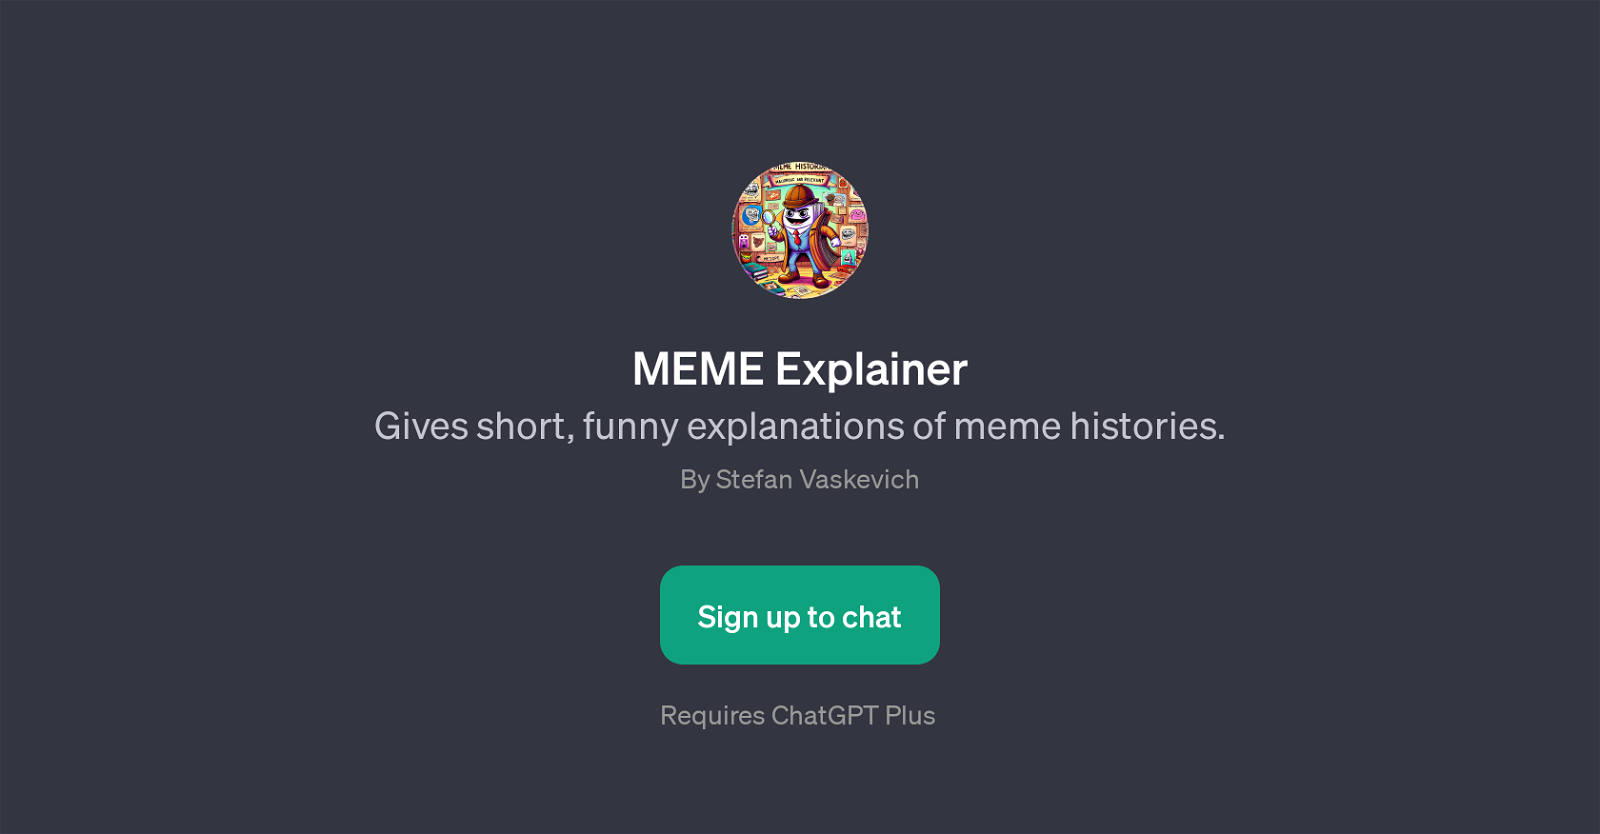 MEME Explainer website